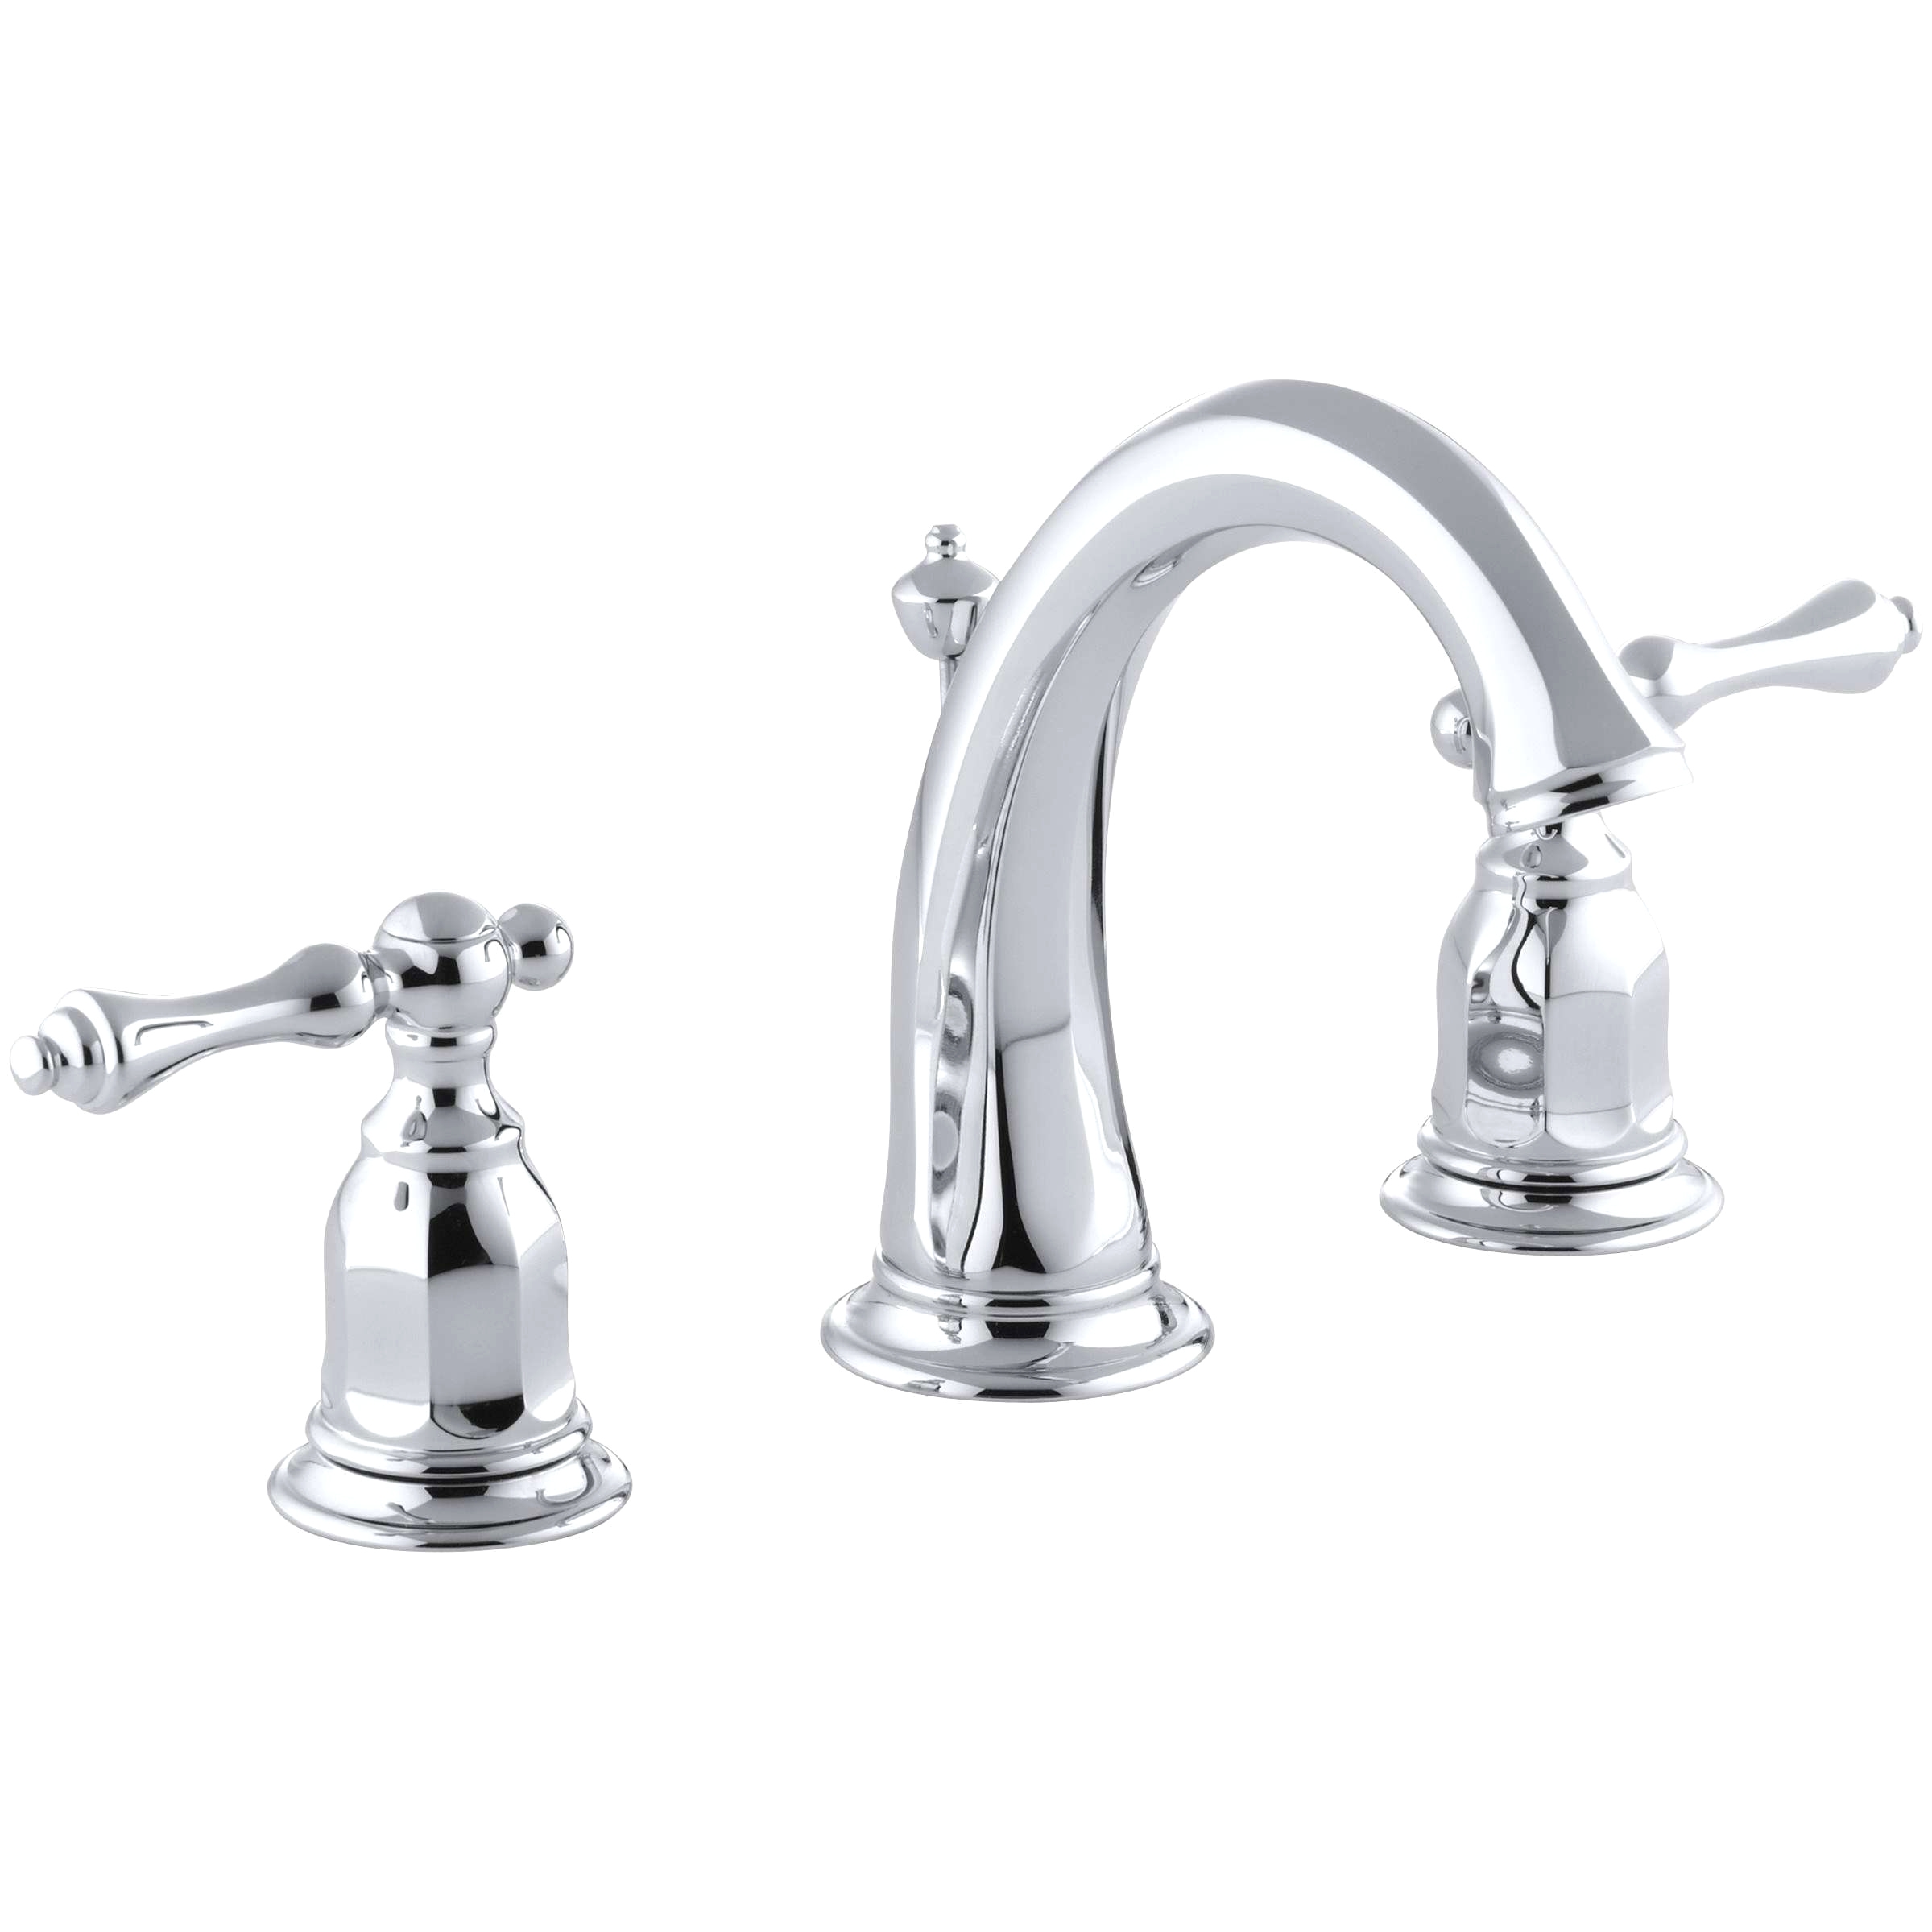 27 inspirational stock of bathroom faucet handle repair